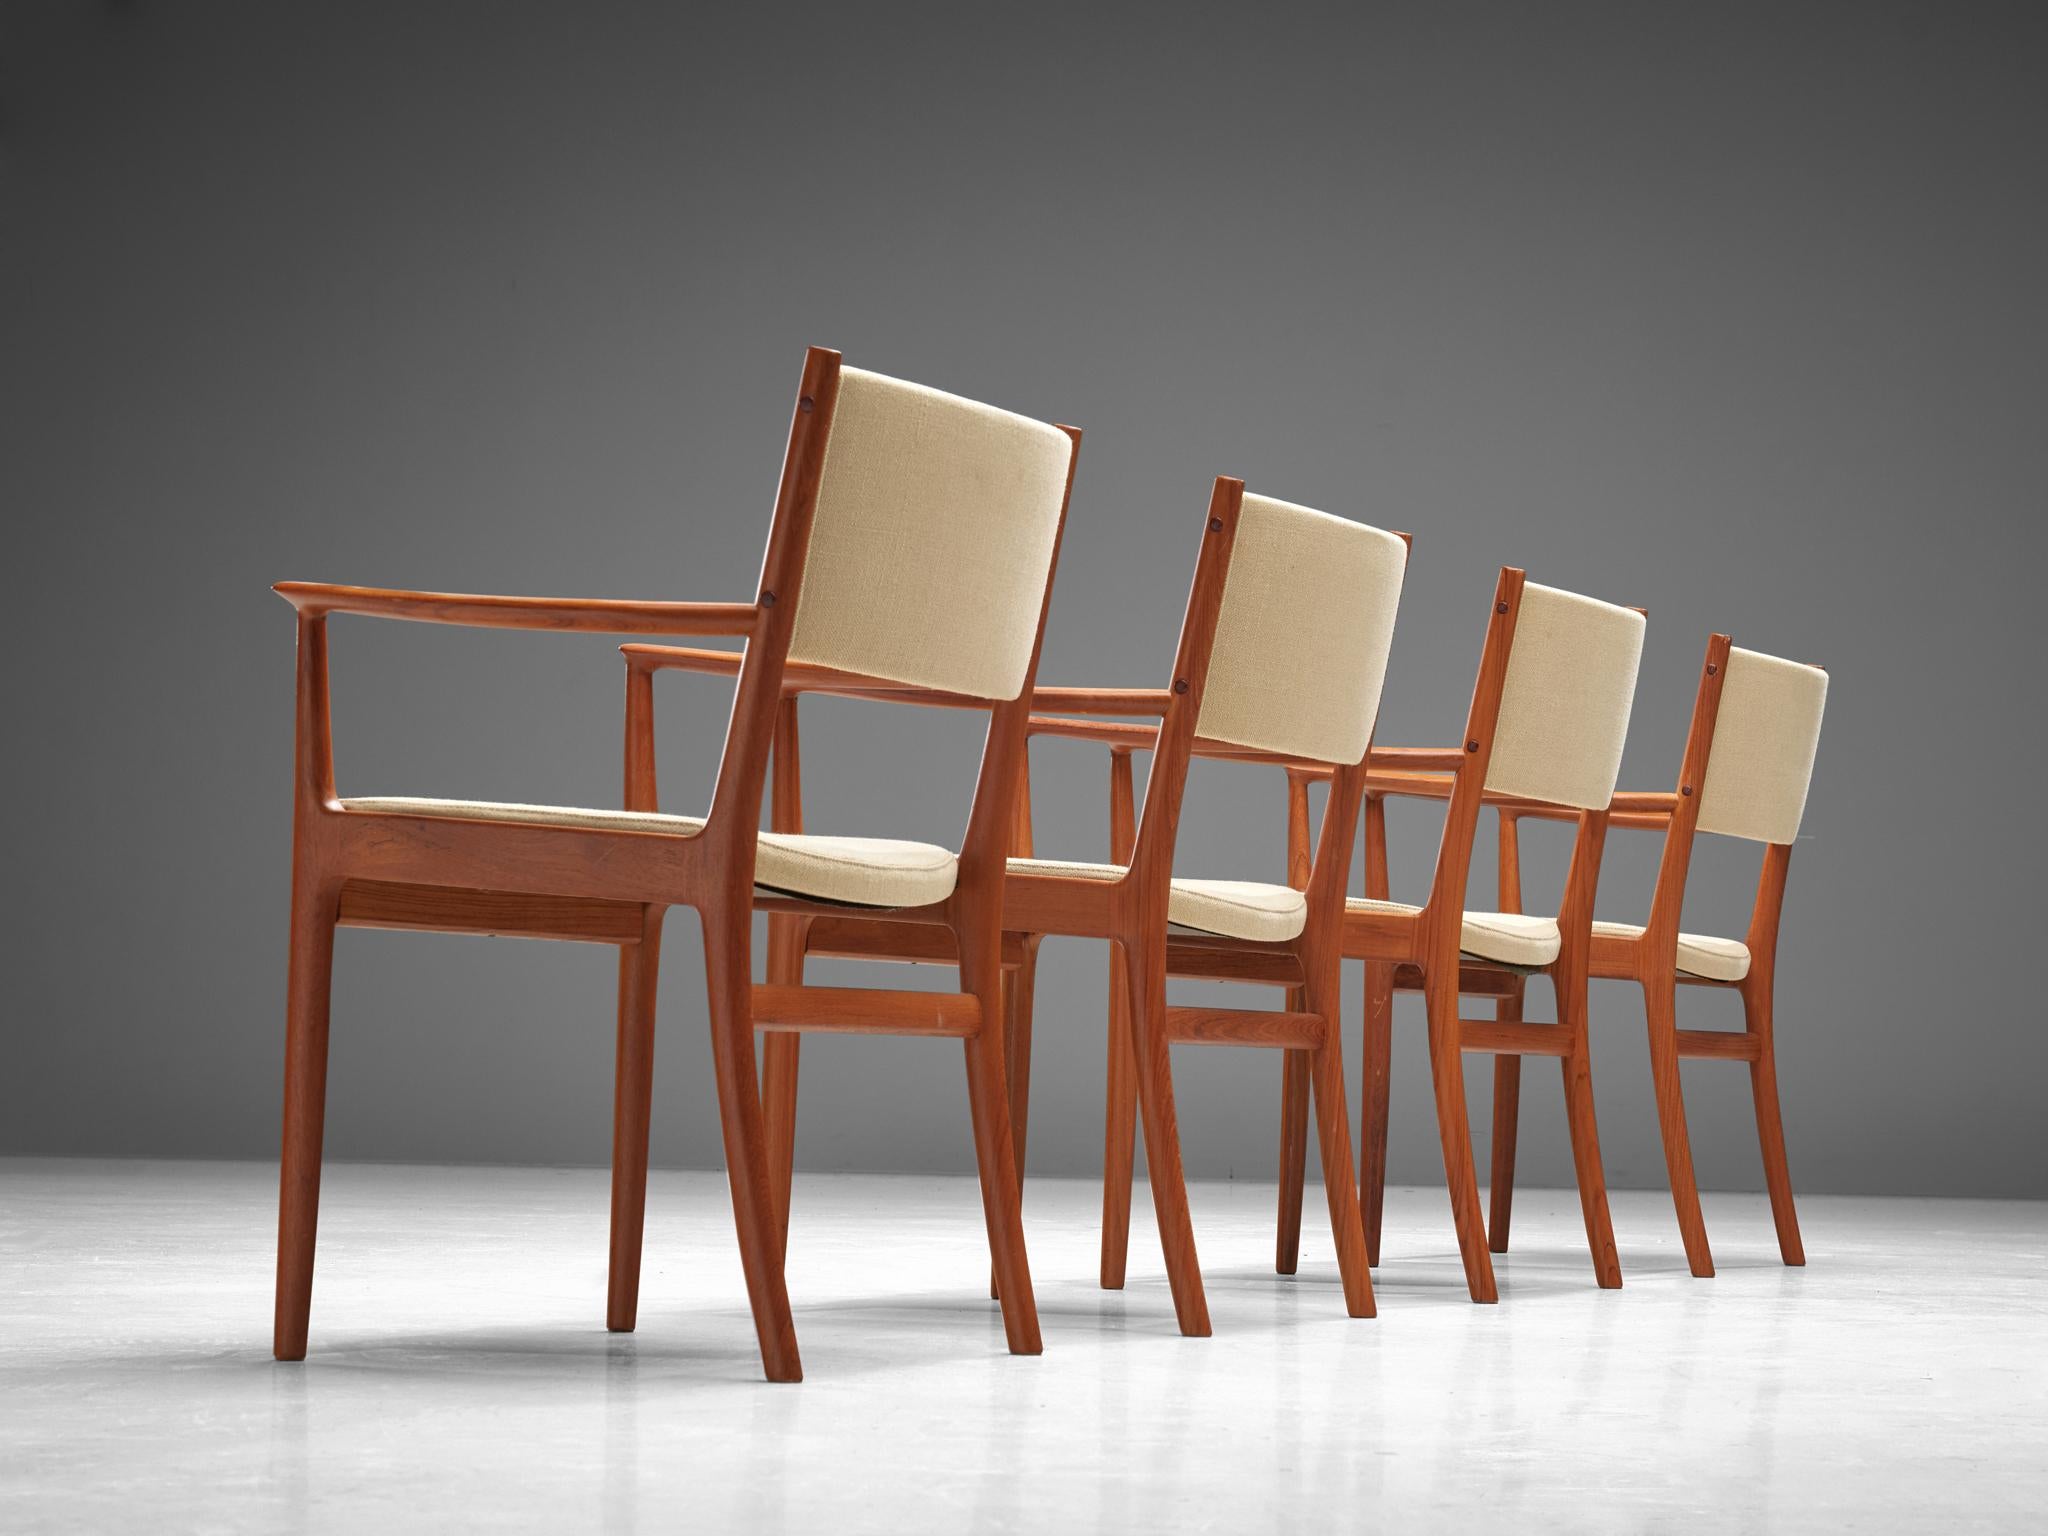 Kai Lyngfeldt Larsen, ensemble de quatre fauteuils, teck, revêtement en tissu beige, Danemark, années 1950

Ces élégants fauteuils en teck sont à la fois majestueux et modestes. Les chaises ont un cadre en teck avec un beau grain visible. Accoudoirs